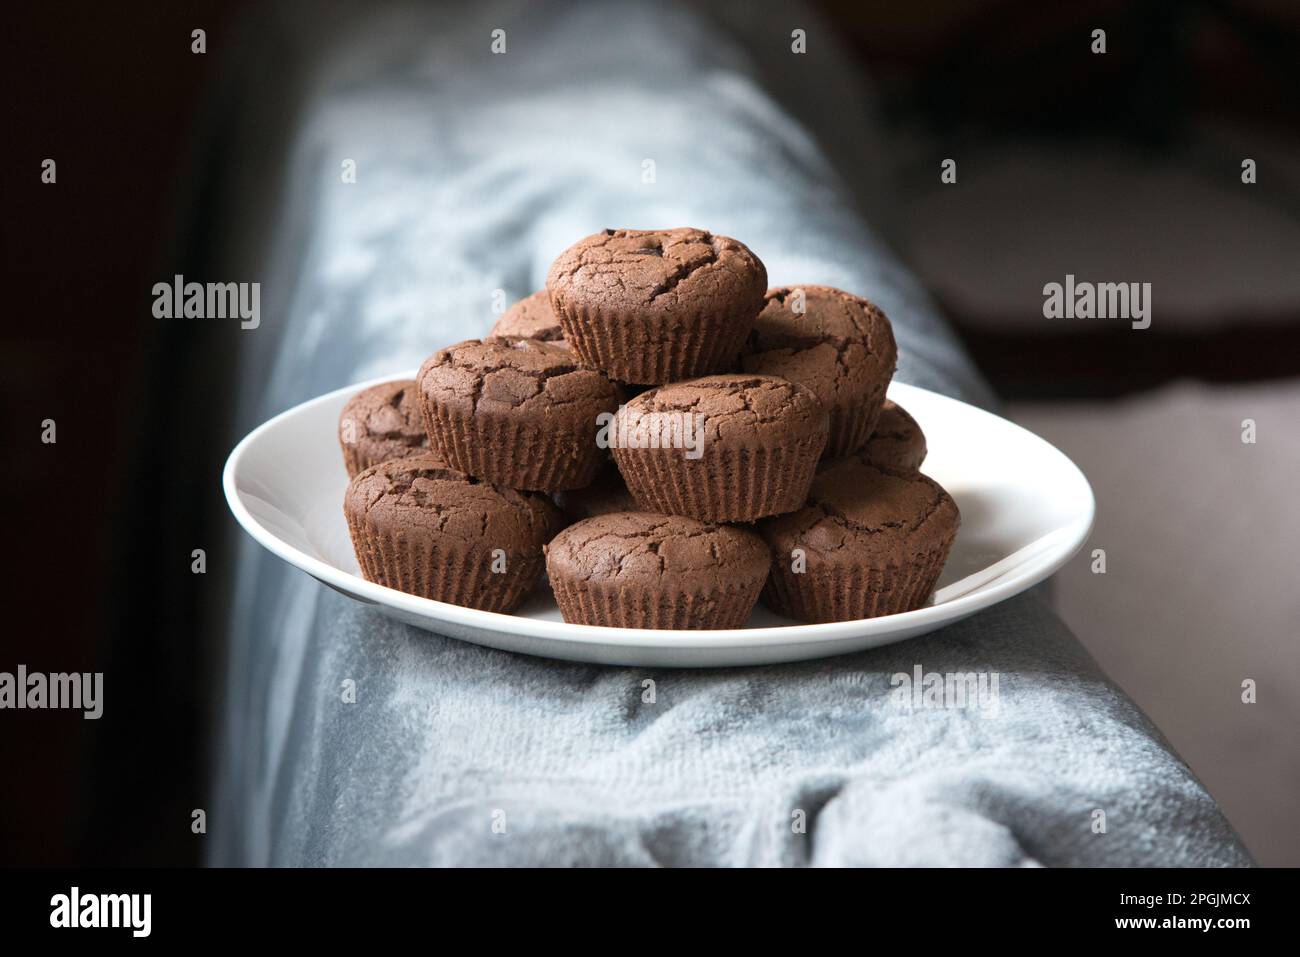 un bel piatto di muffin appena sfornati, muffin al caçao con gocce di cioccolata, dolci al cioccolato su un piatto Banque D'Images